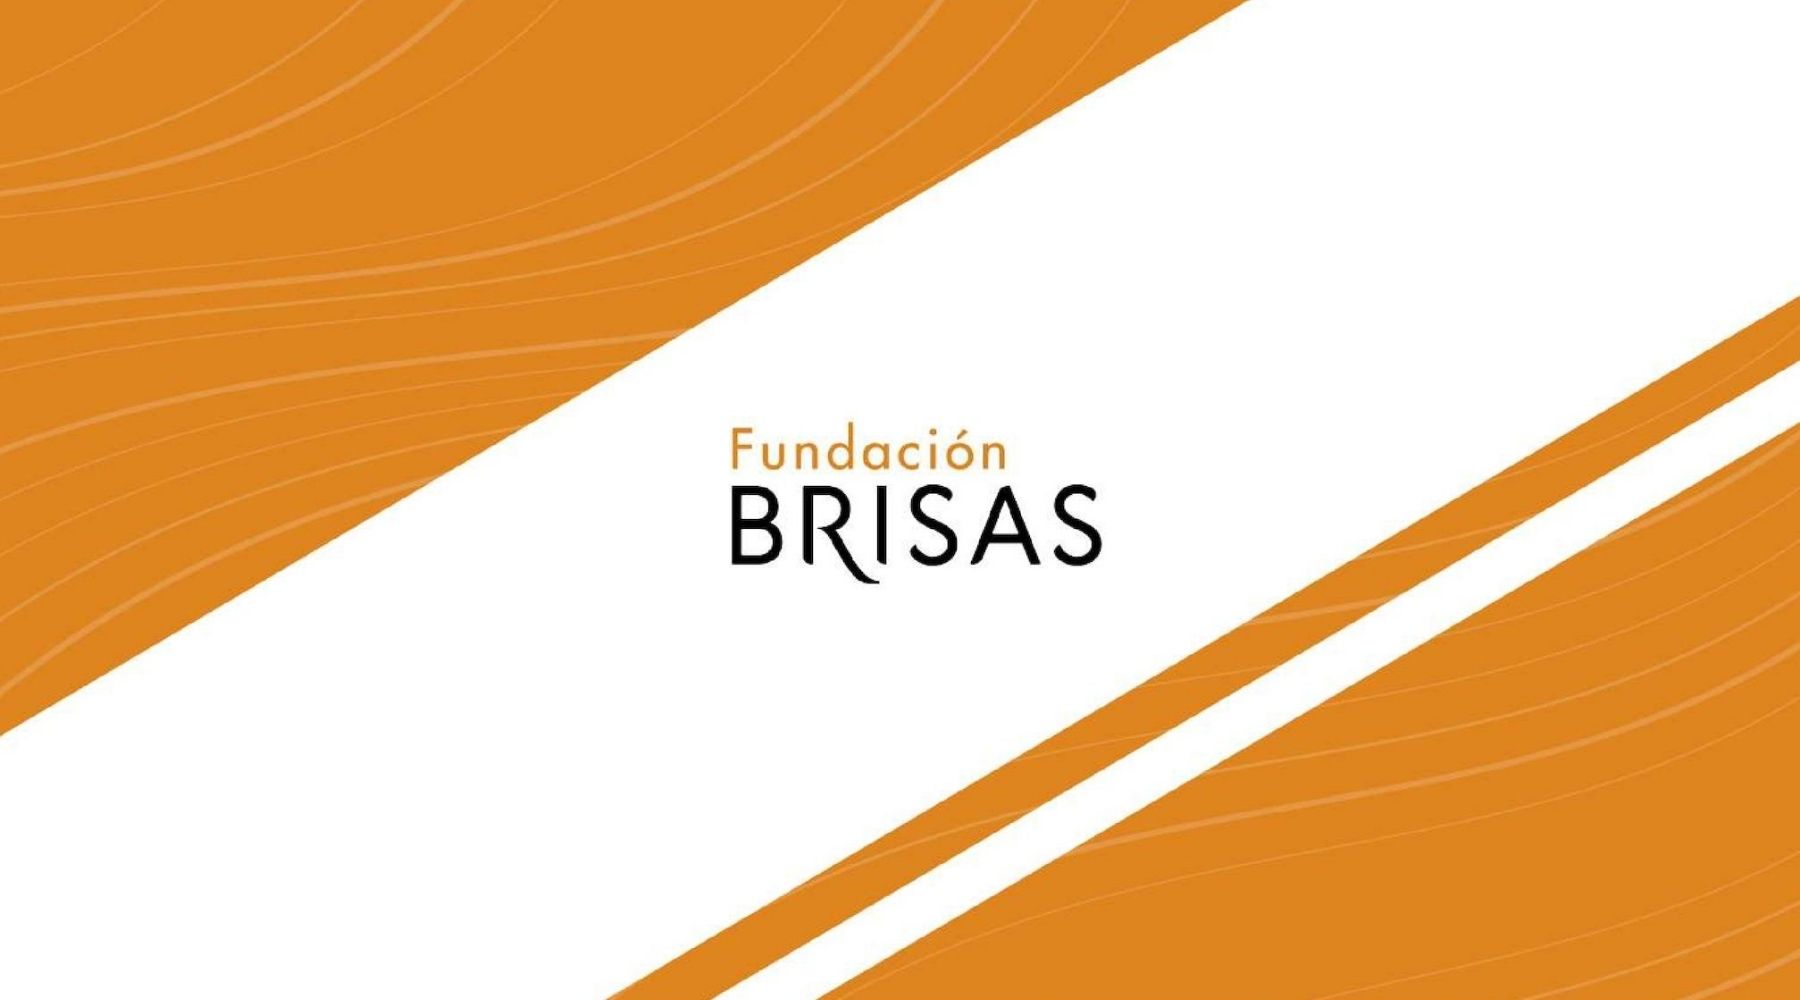 Fundación Brisas destacó en 2020